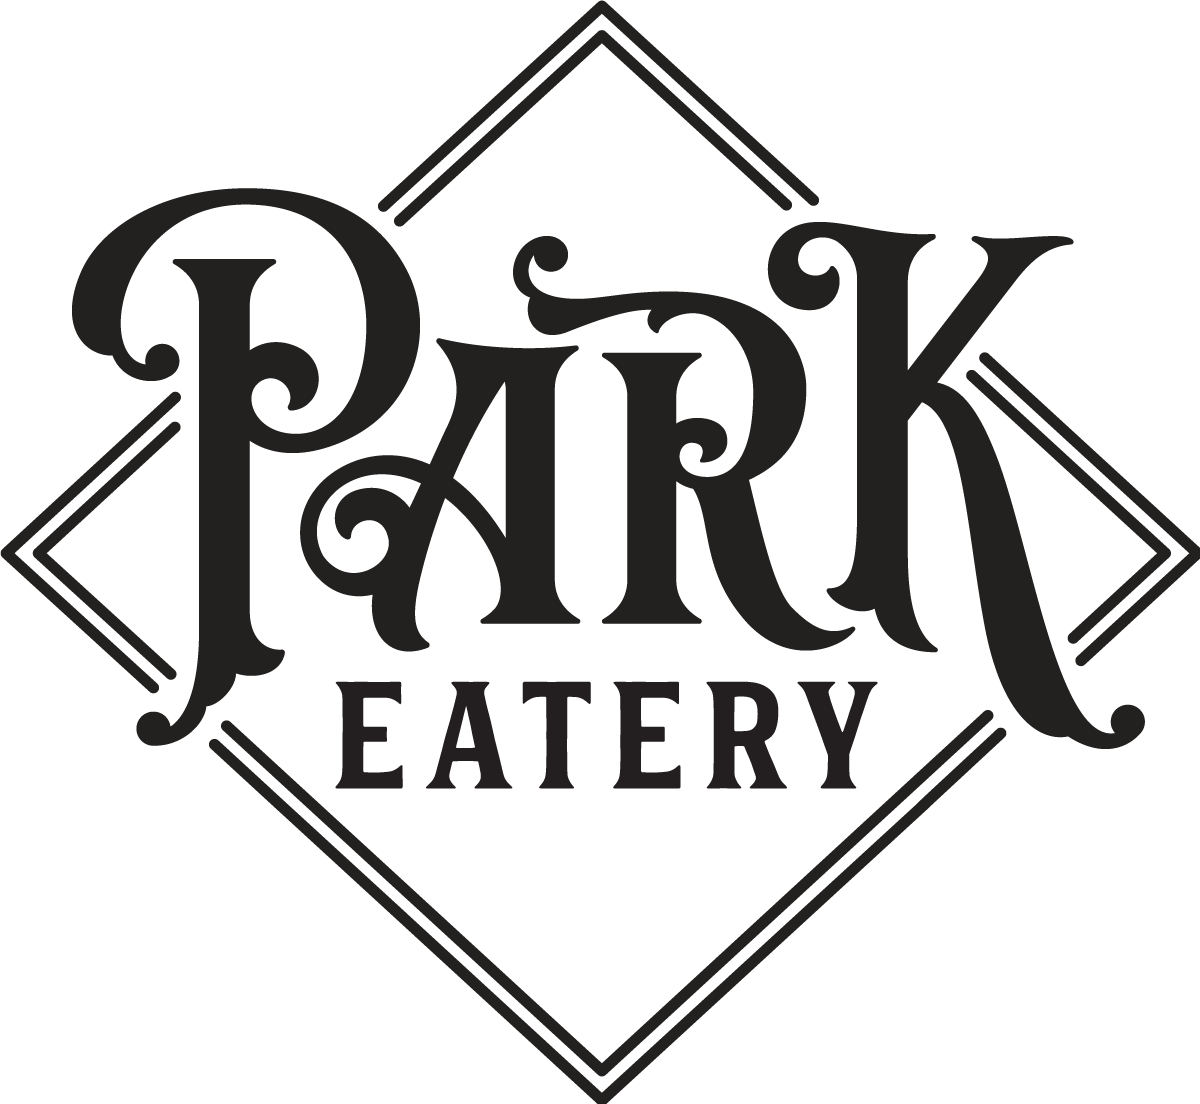 Park Eatery